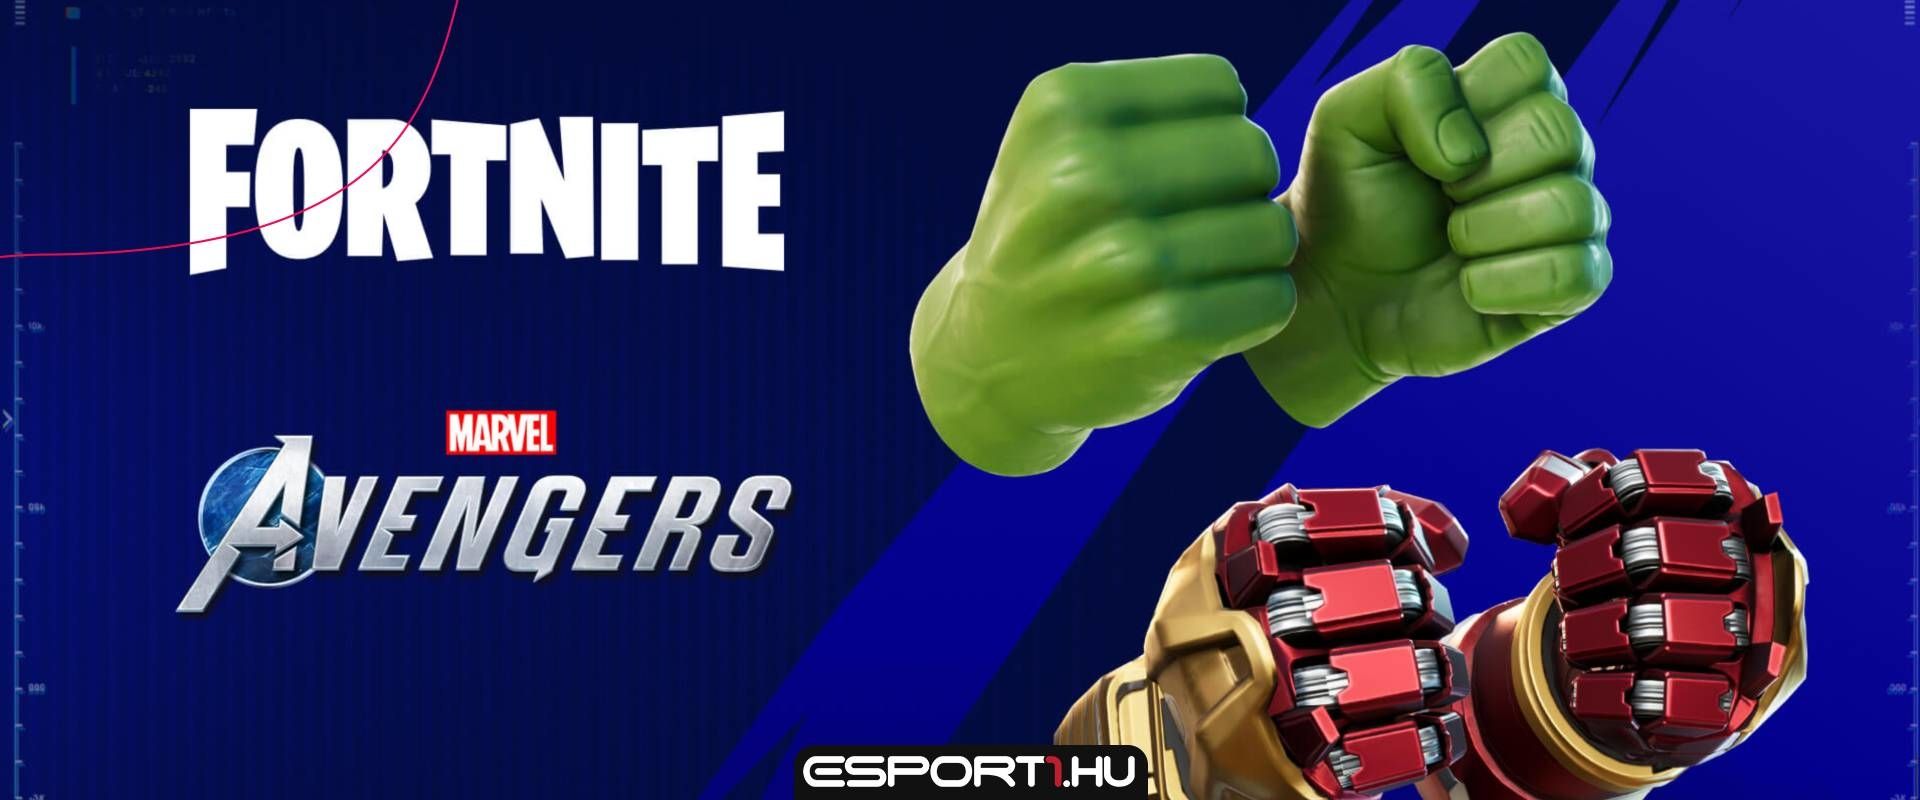 Újabb Avengers kiegészítővel bővül a Fortnite, Hulk öklét szerezhetjük meg